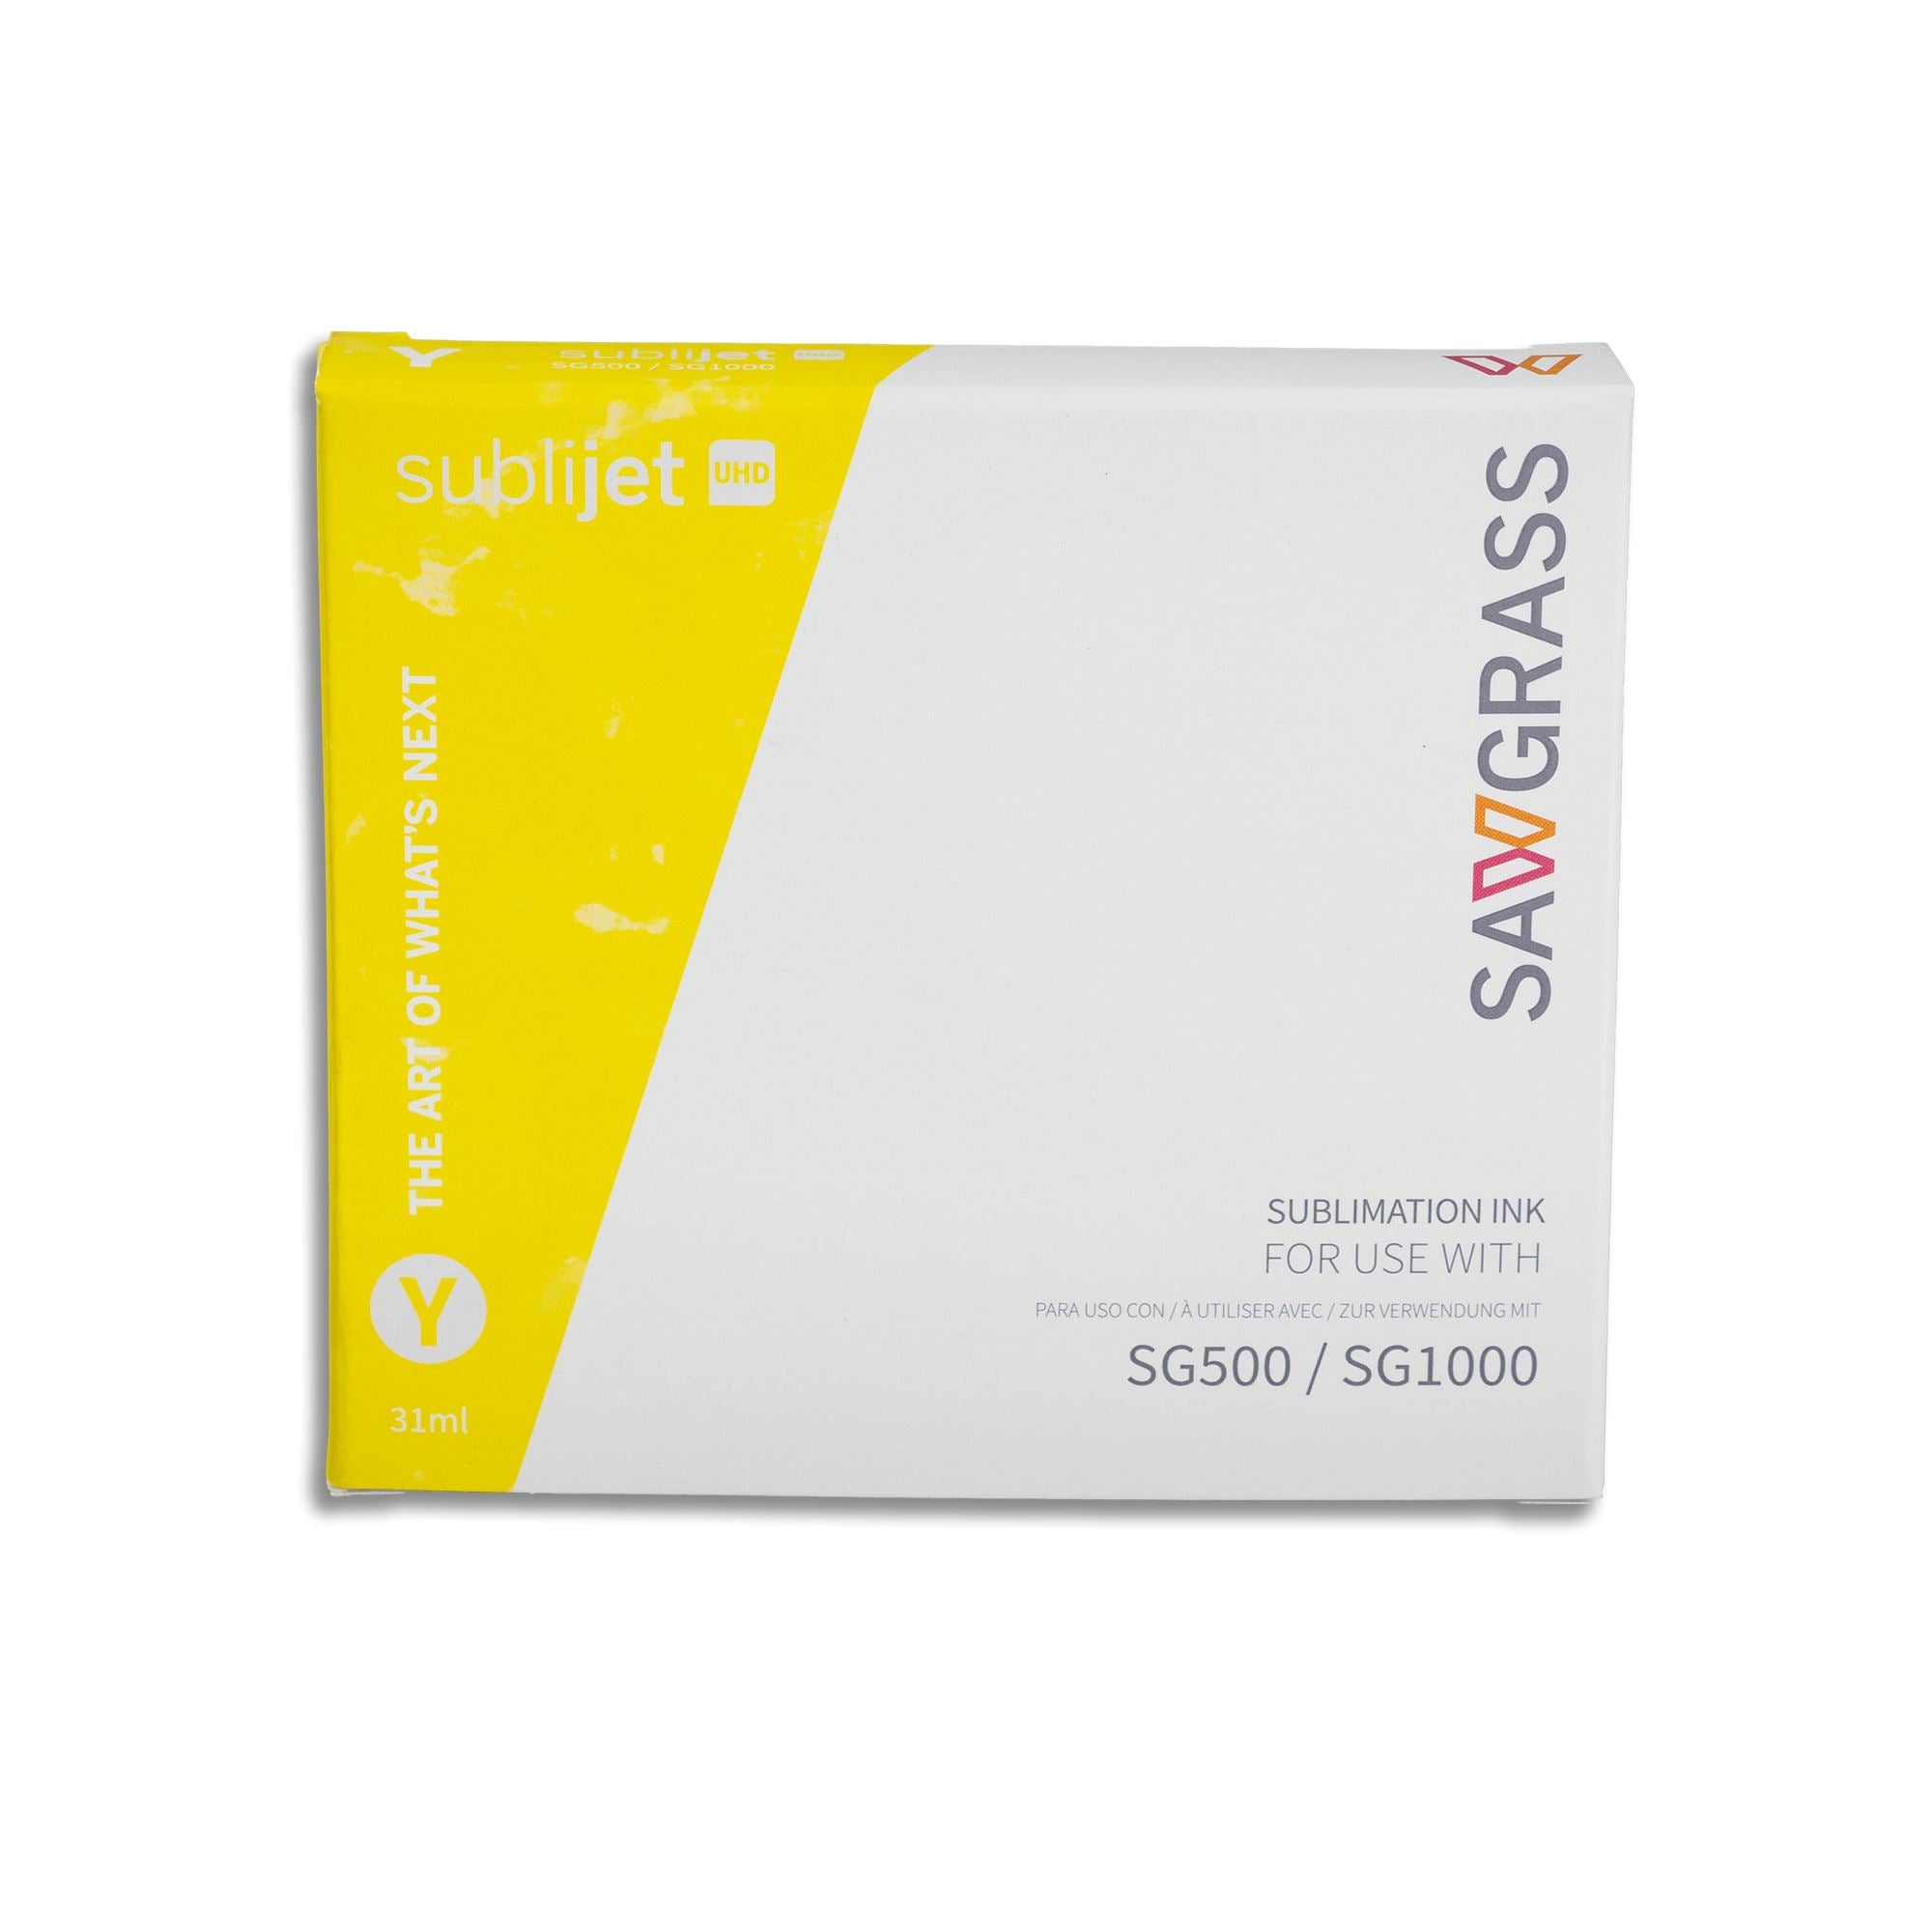 Siser EasySubli UHD ink cartridges for Sawgrass SG500 & SG1000